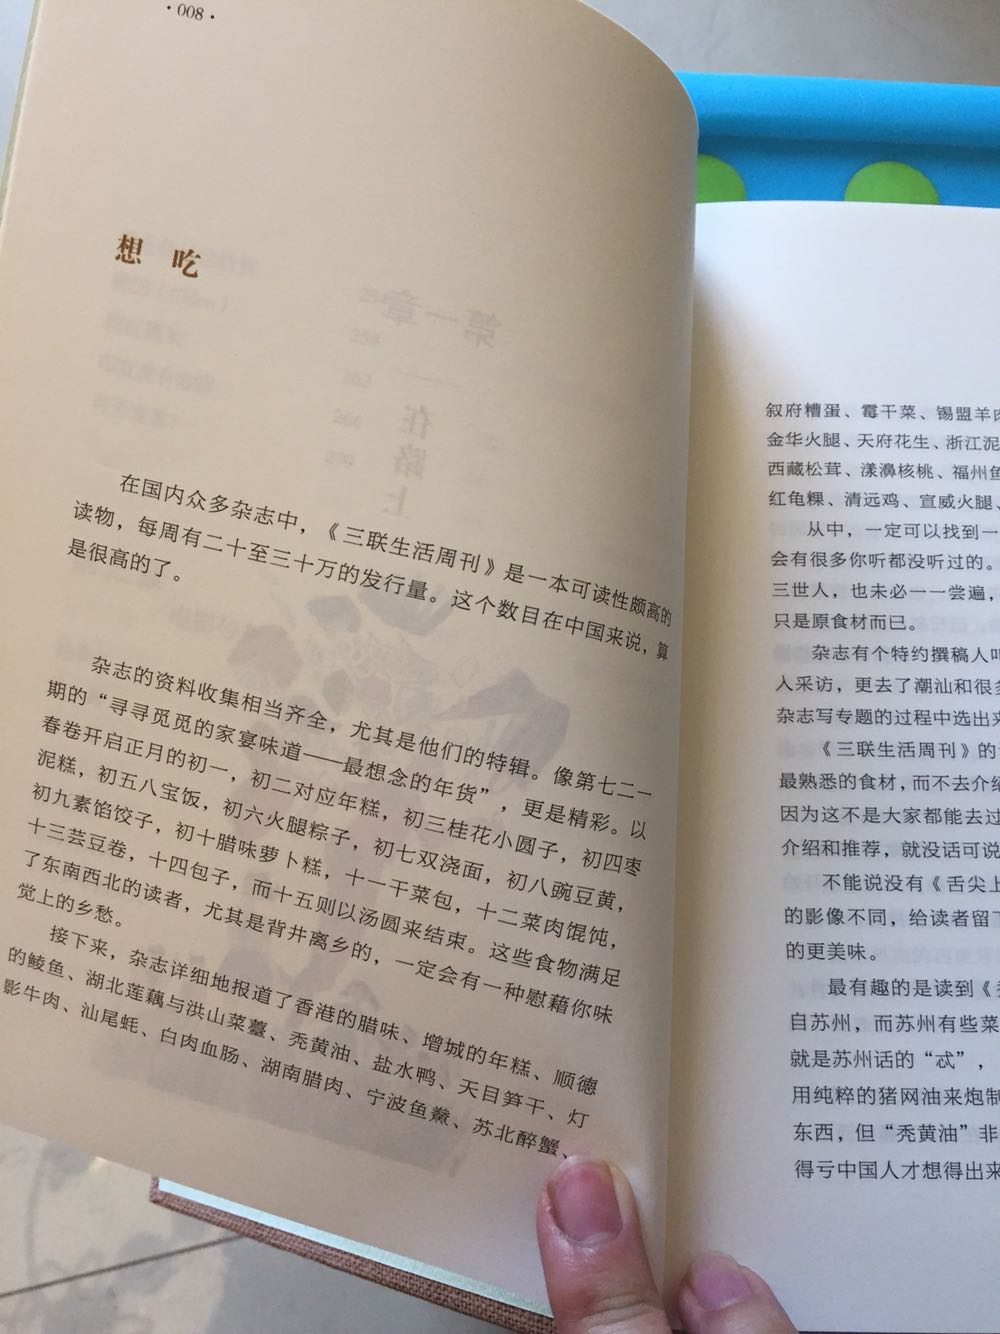 喜欢蔡澜先生的书，尤其是和旅行相关的